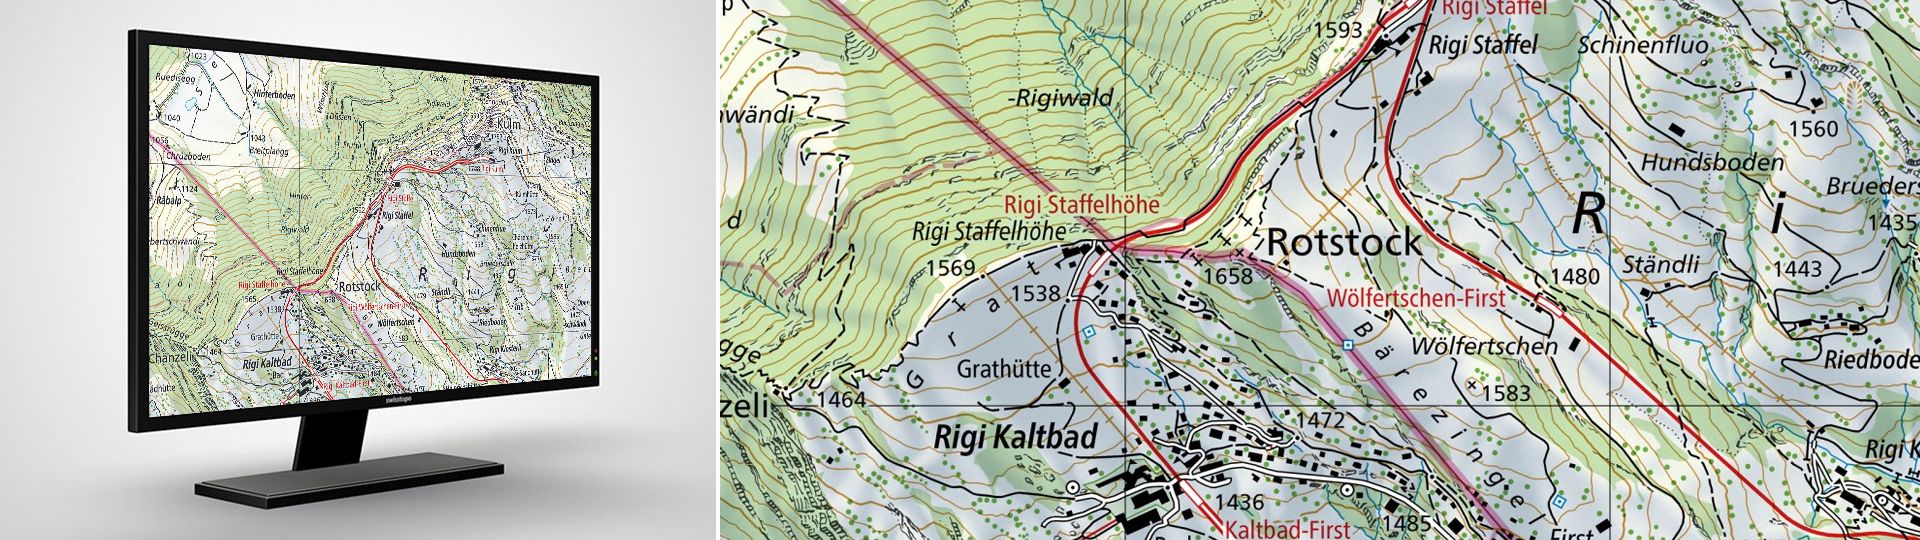 Swiss Map Raster 25: les cartes nationales de la Suisse au 1:25 000 en format raster